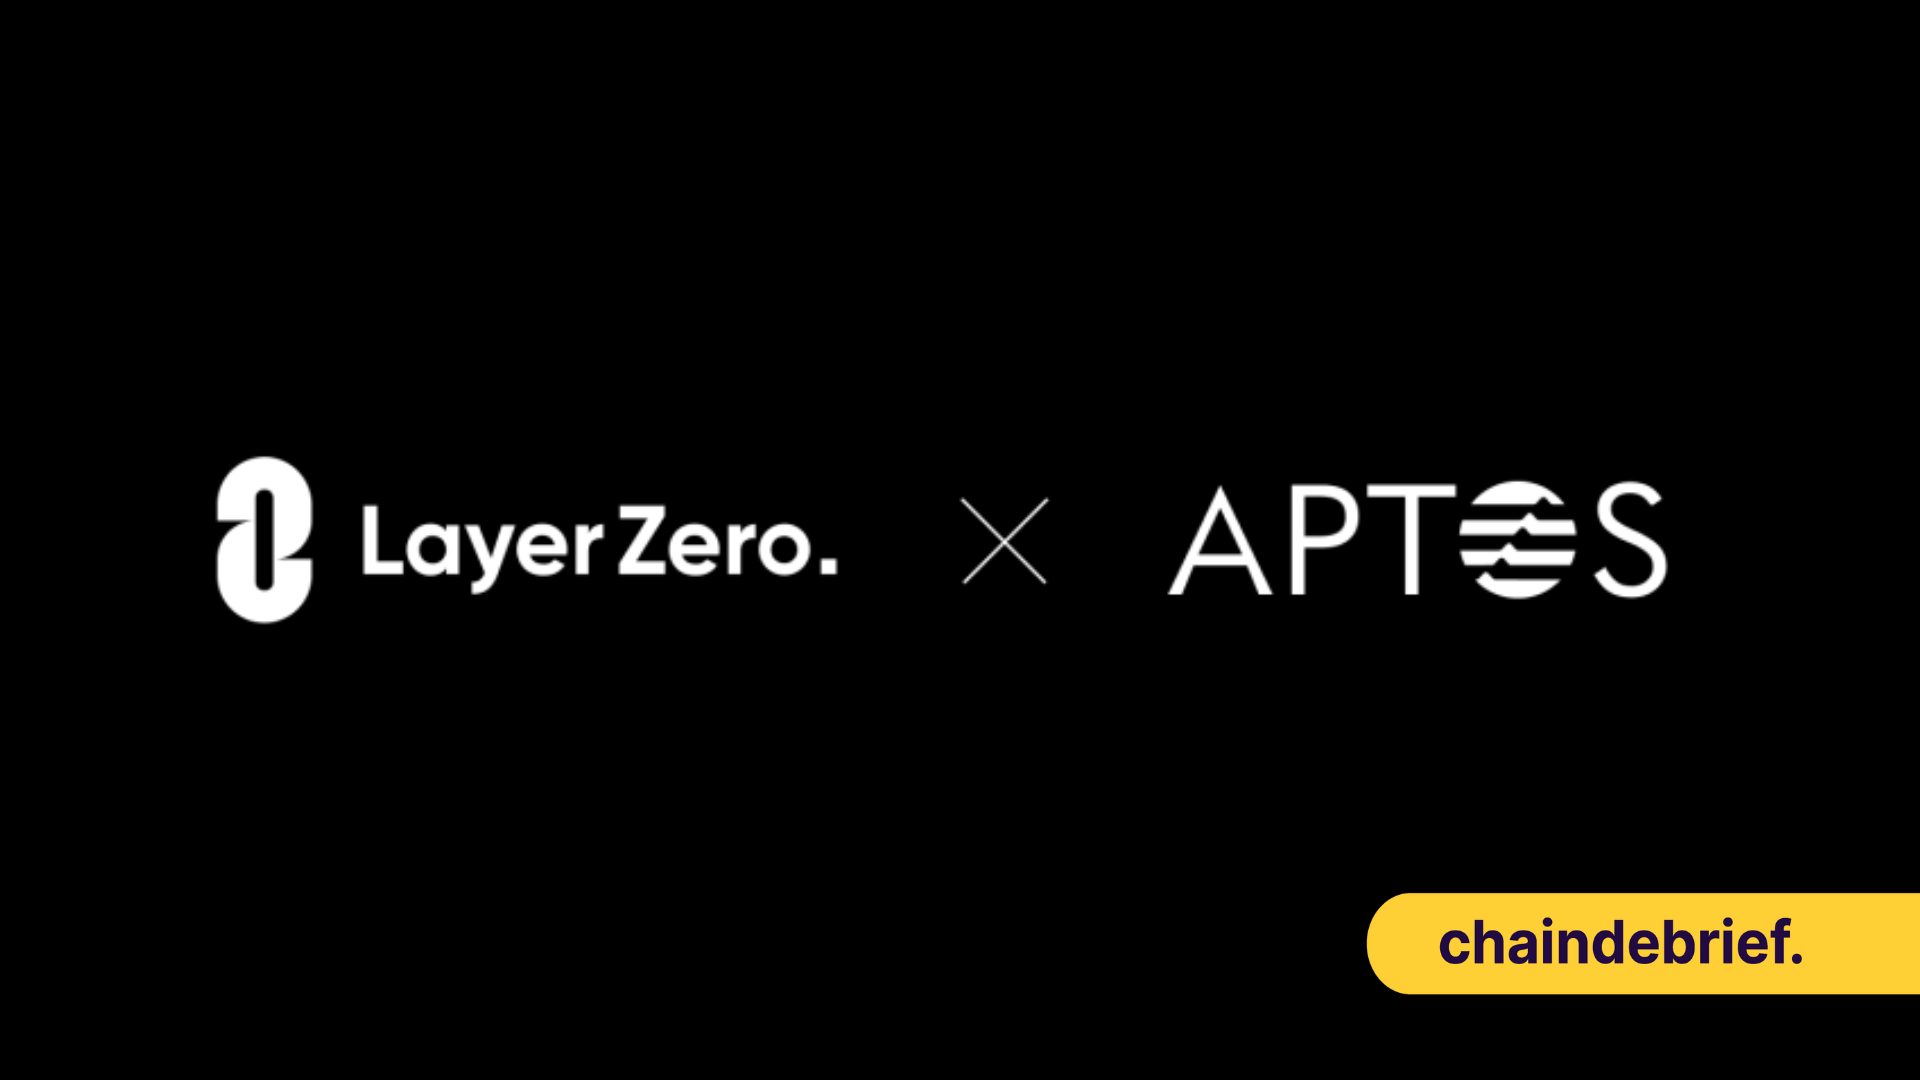 Aptos Integrates With LayerZero